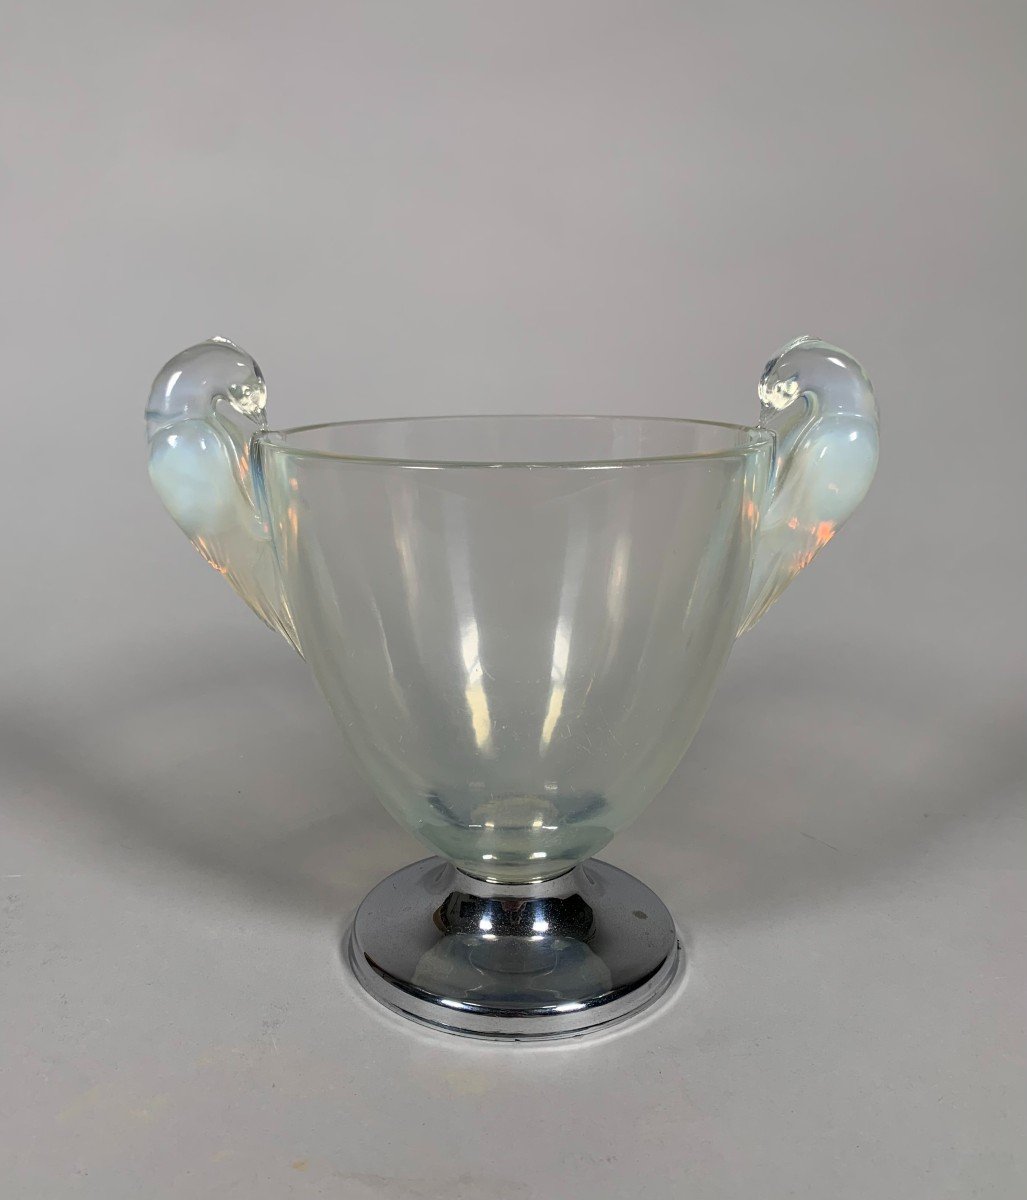 René Lalique (1860-1940) Vase Modèle Ornis 1926 Art Nouveau